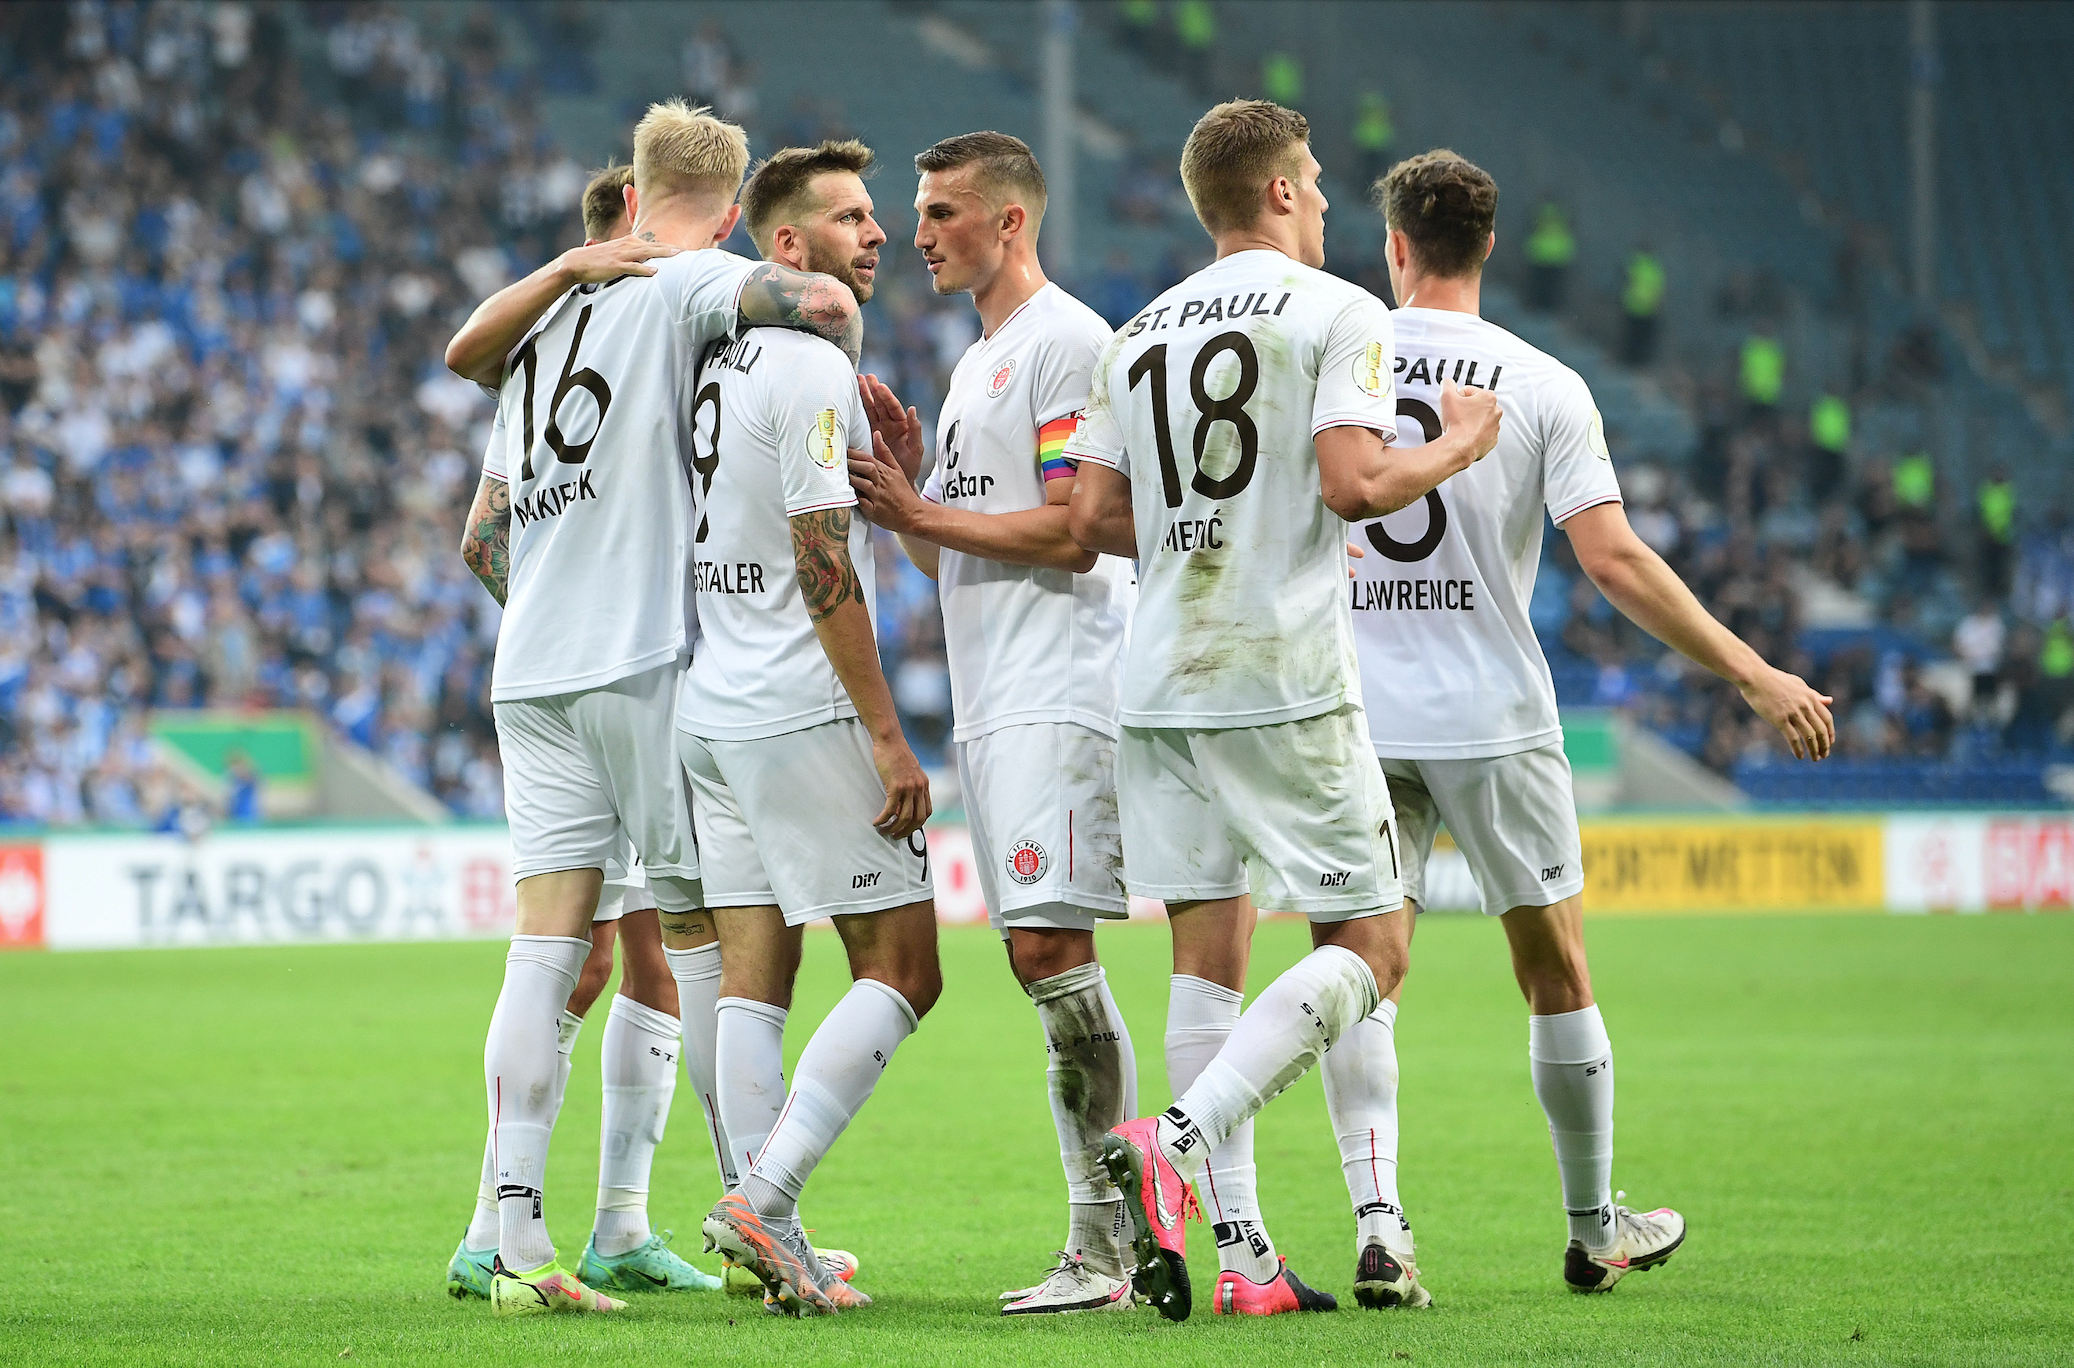 St. Paulis Spieler Spieler bejubeln ihr Tor im DFB-Pokal